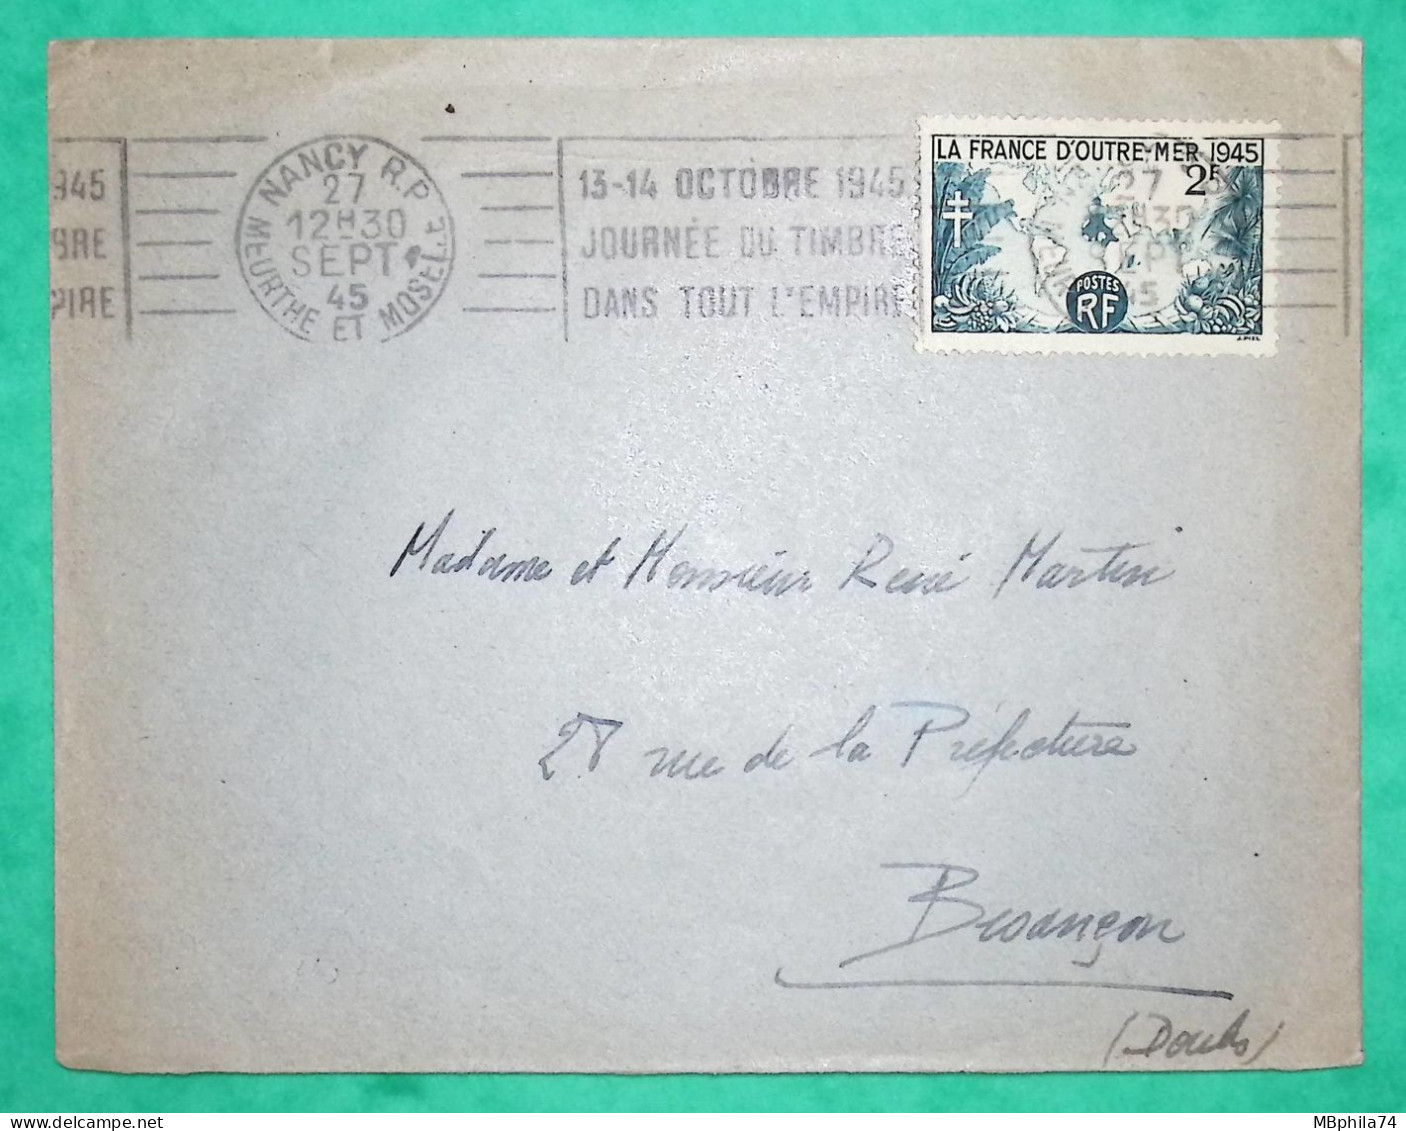 N°741 OBLITERATION MECANIQUE FLIER NANCY JOURNEE DU TIMBRE DANS TOUT L'EMPIRE POUR BESANCON DOUBS 1945 COVER FRANCE - Mechanical Postmarks (Advertisement)